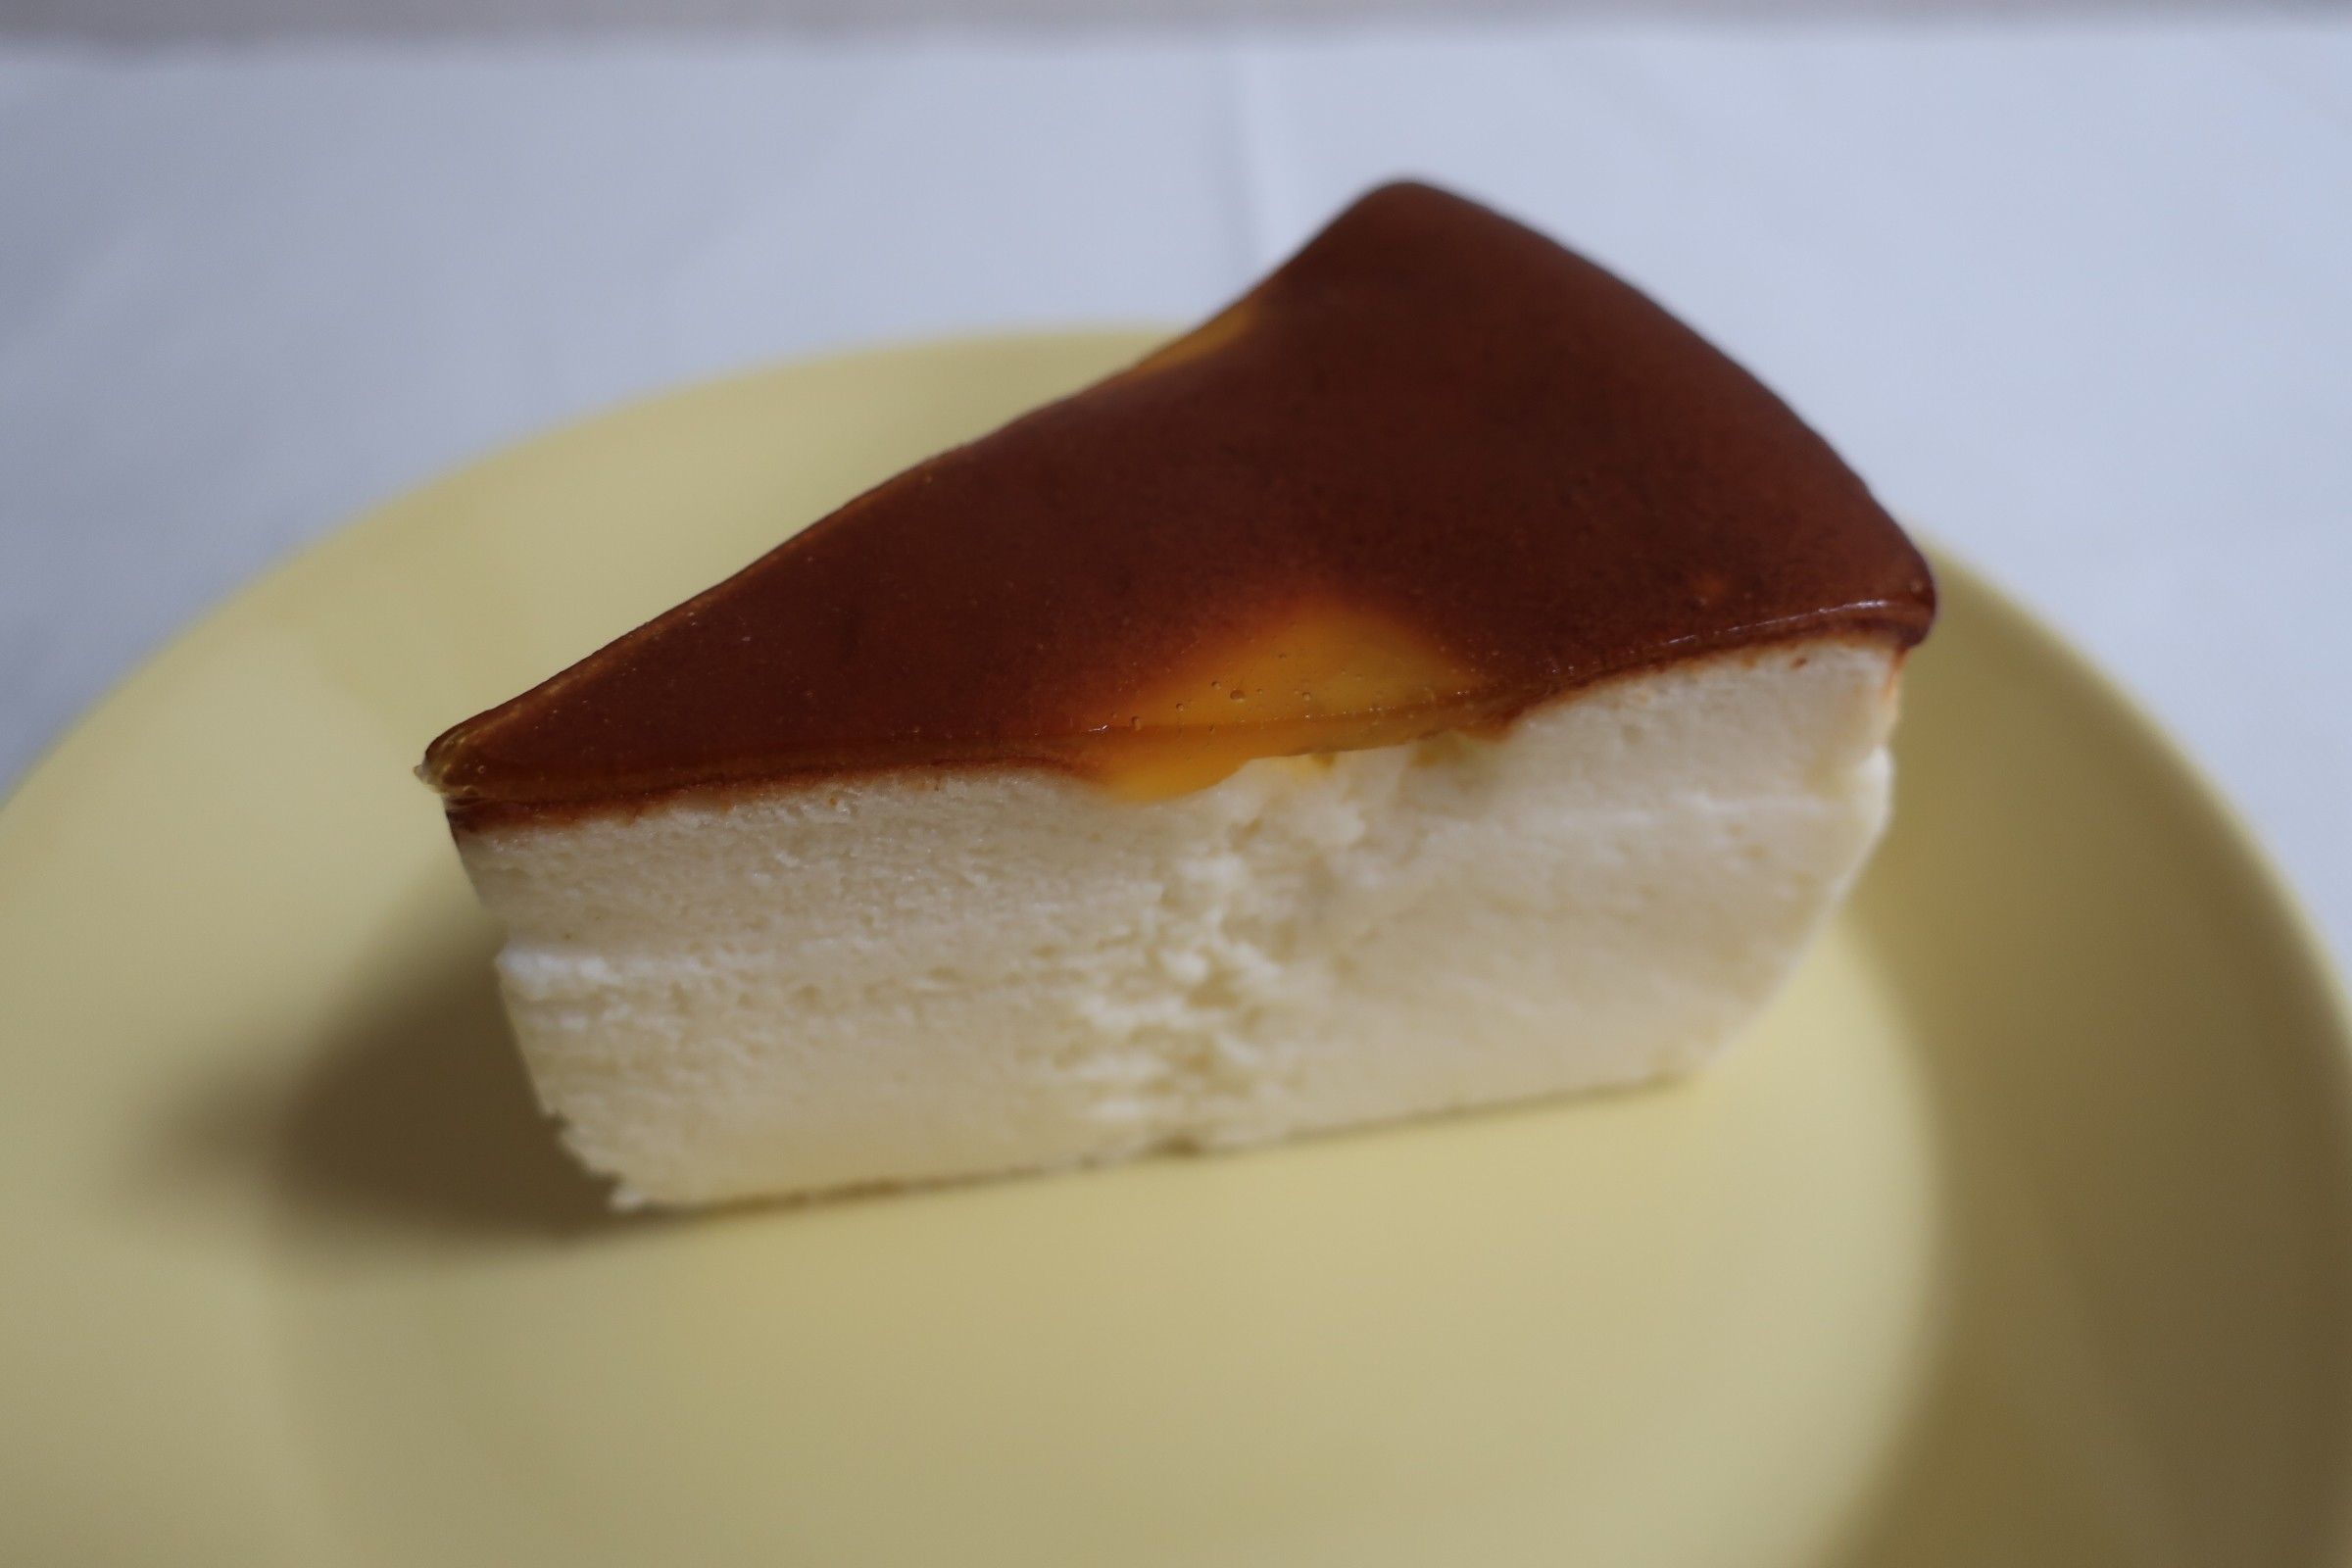 無印良品京都山科 Cafe Mealmuji スイス菓子ローヌracto店 Chikoliのほぼ食日記 楽天ブログ